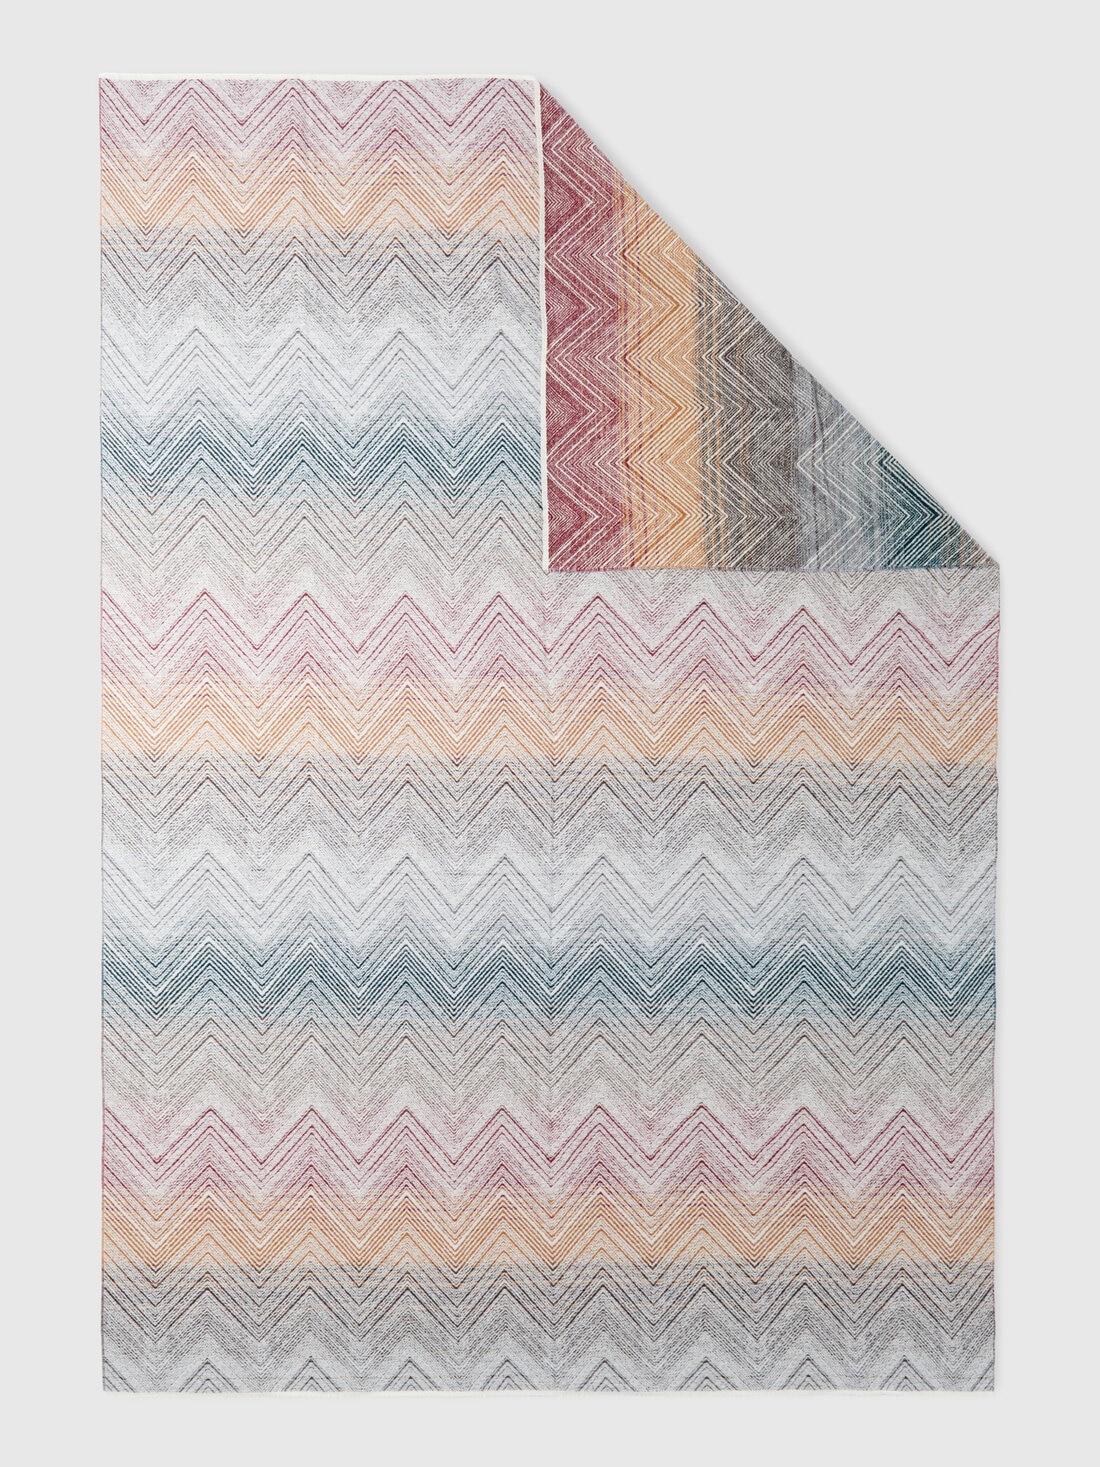 Marea, Decke 130x190 cm aus Wolle mit Chevronmuster , Mehrfarbig  - 8053147134765 - 2